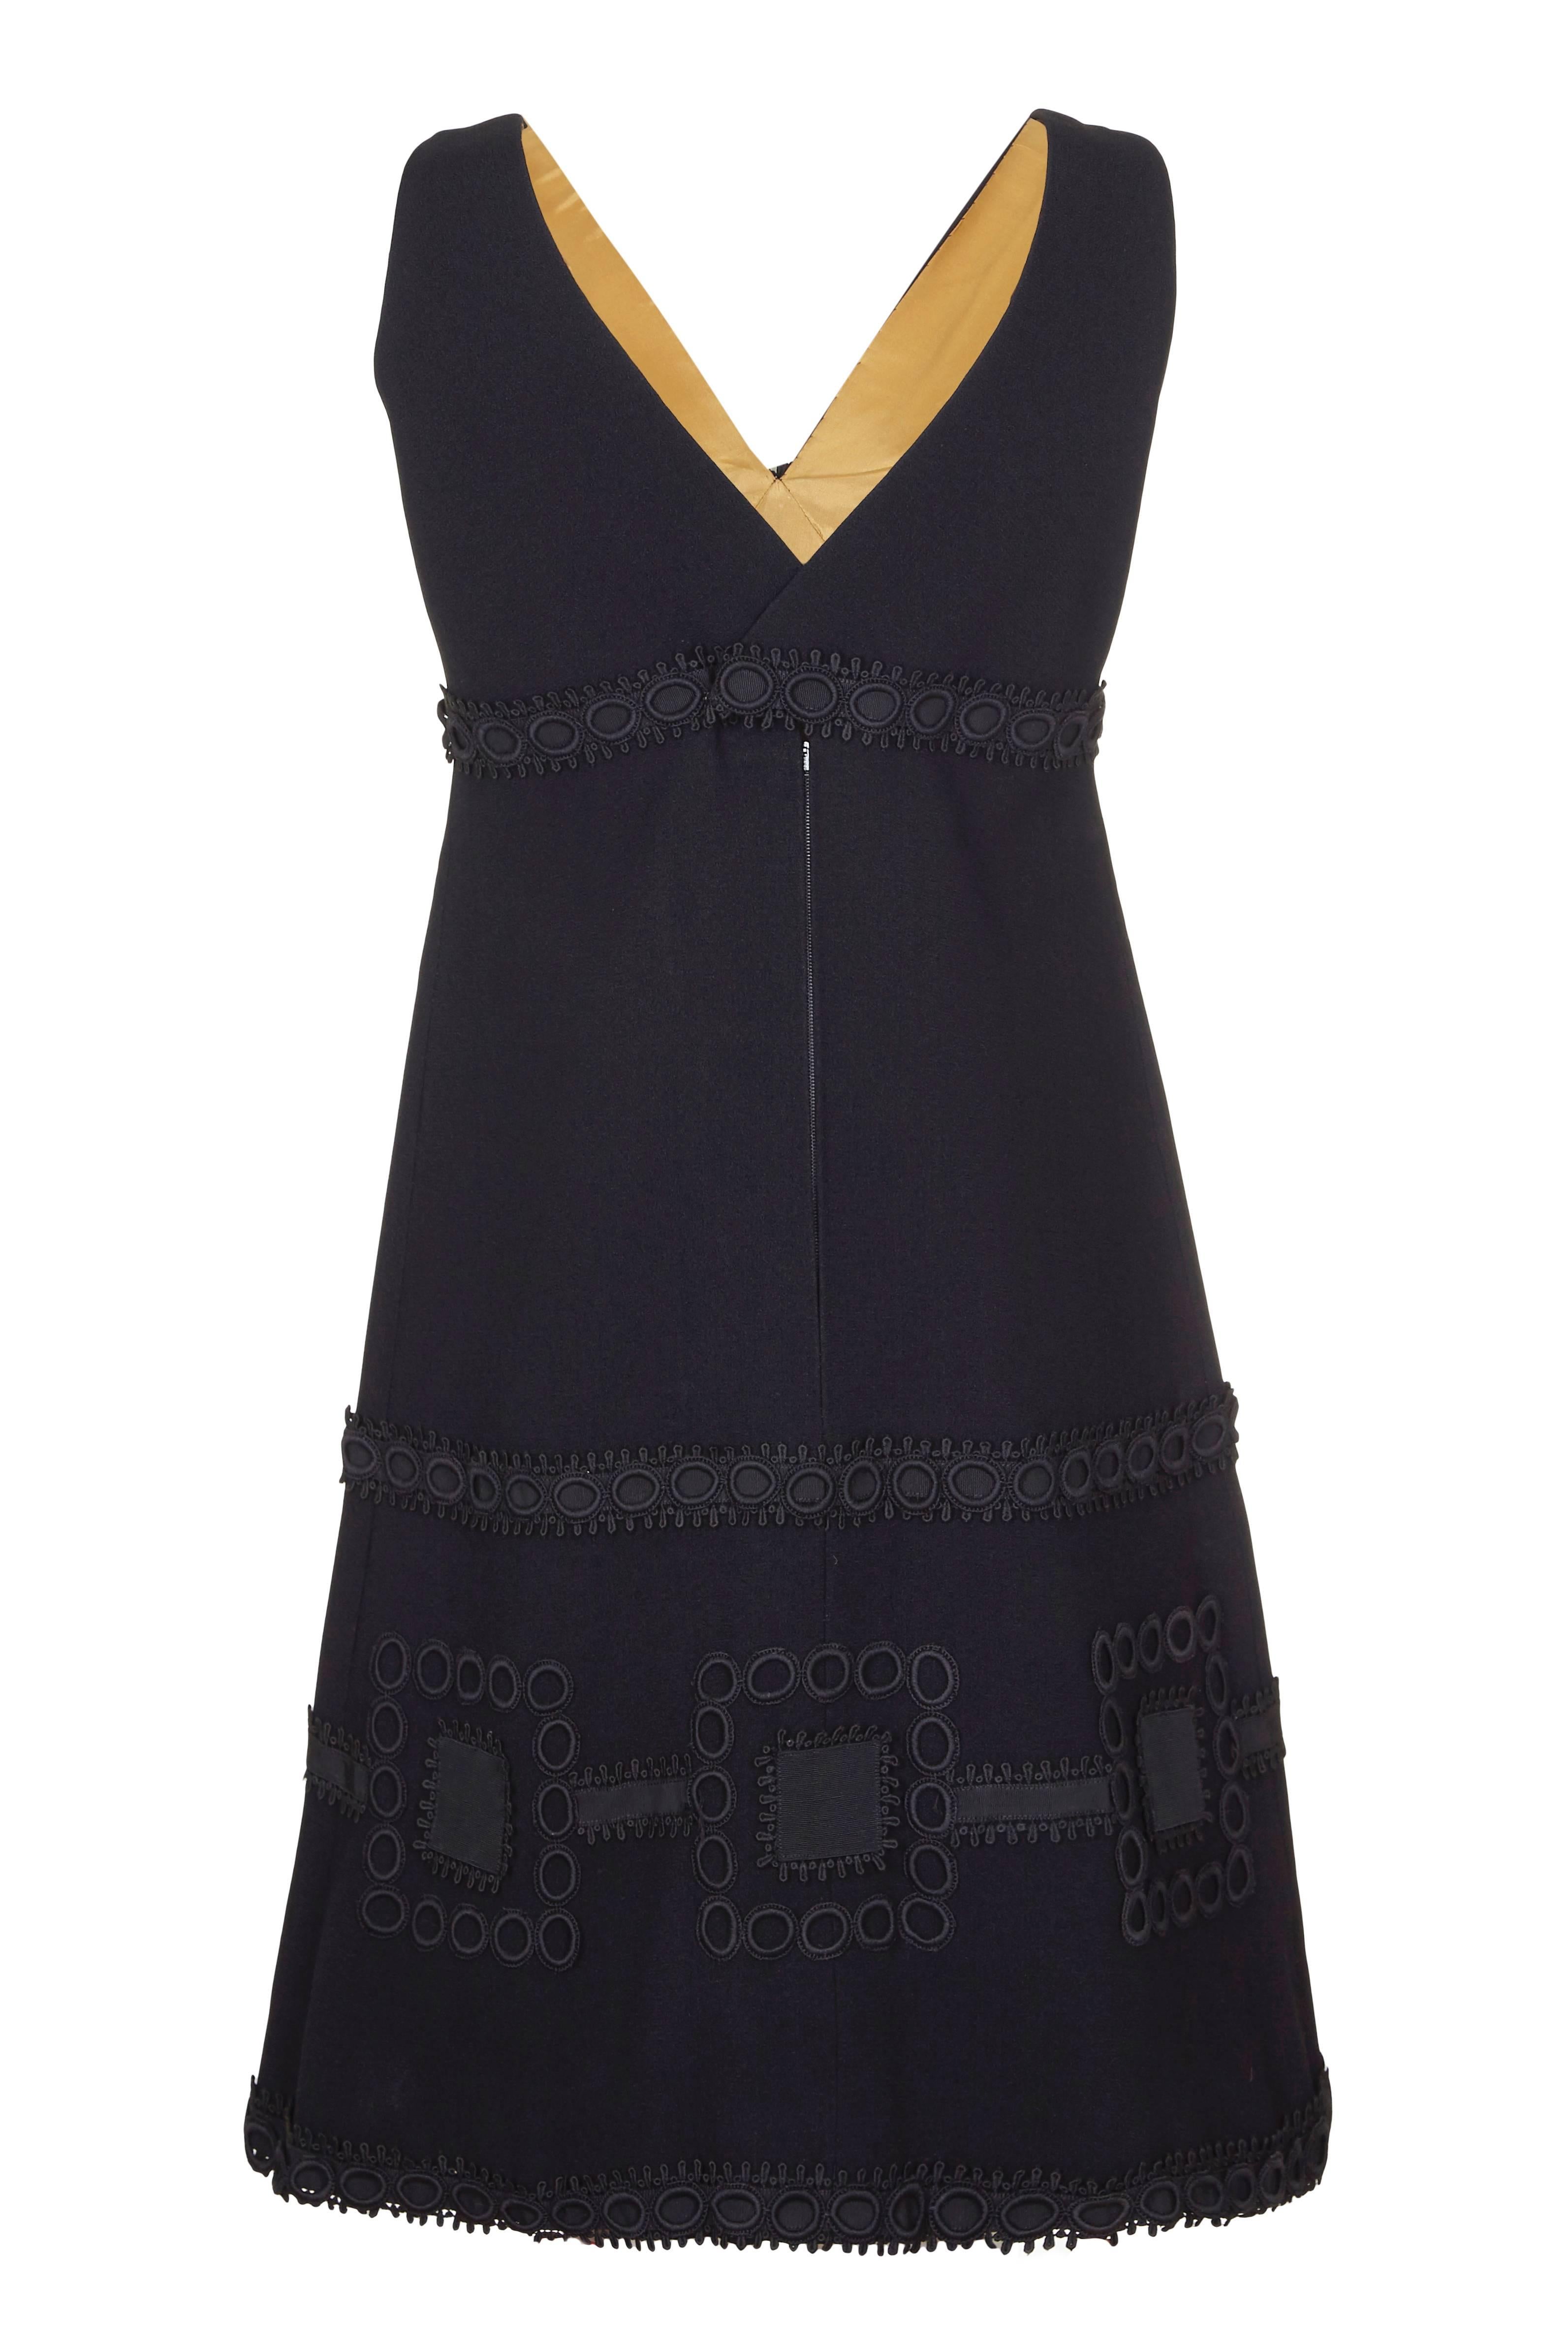 Cette magnifique mini robe noire des années 1960, de ligne empire, est une création couture de la designer française Simone Mirman et est d'une qualité exceptionnelle. La robe est composée de crêpe noir et doublée de façon impeccable en satin doré.